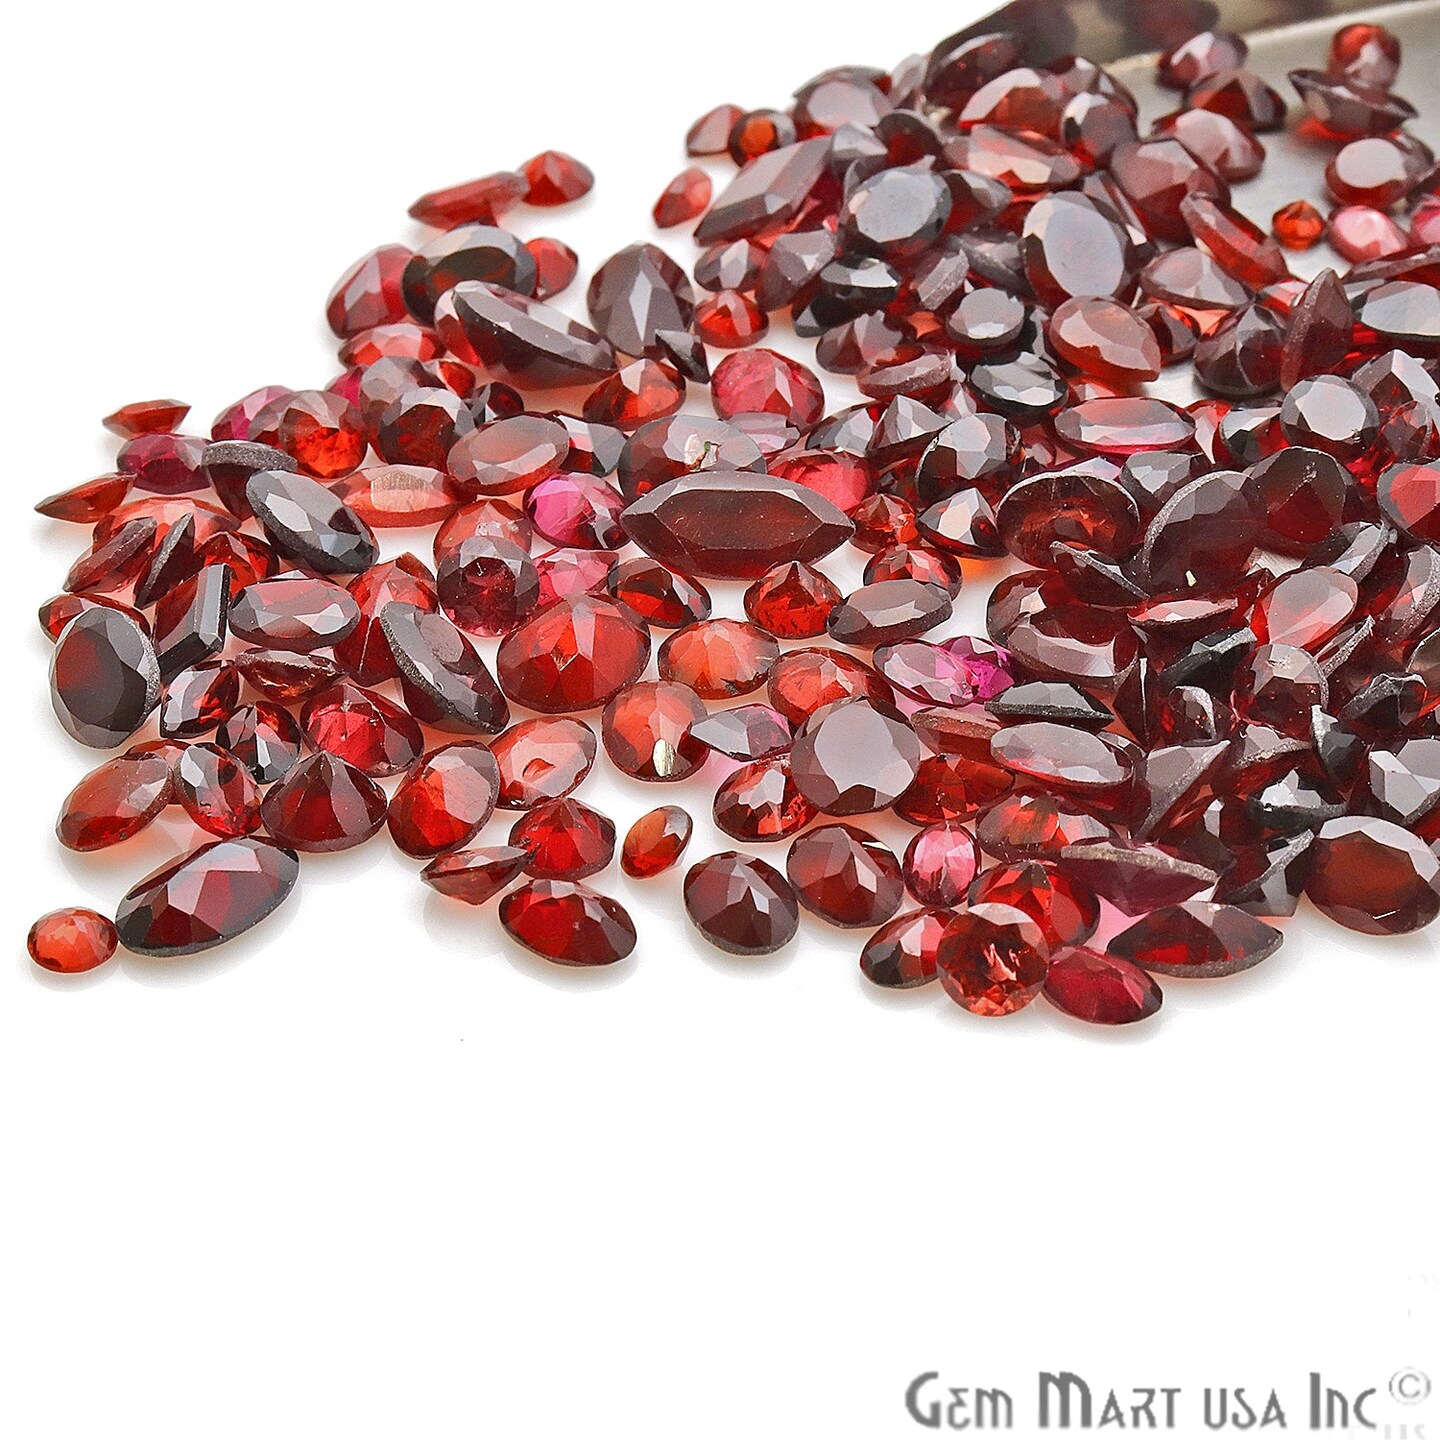 Garnet Gemstone, 100% Natural Faceted Loose Gems, January Birthstone, 6-12mm, 50 Carats, GemMartUSA (GT-60001-50)